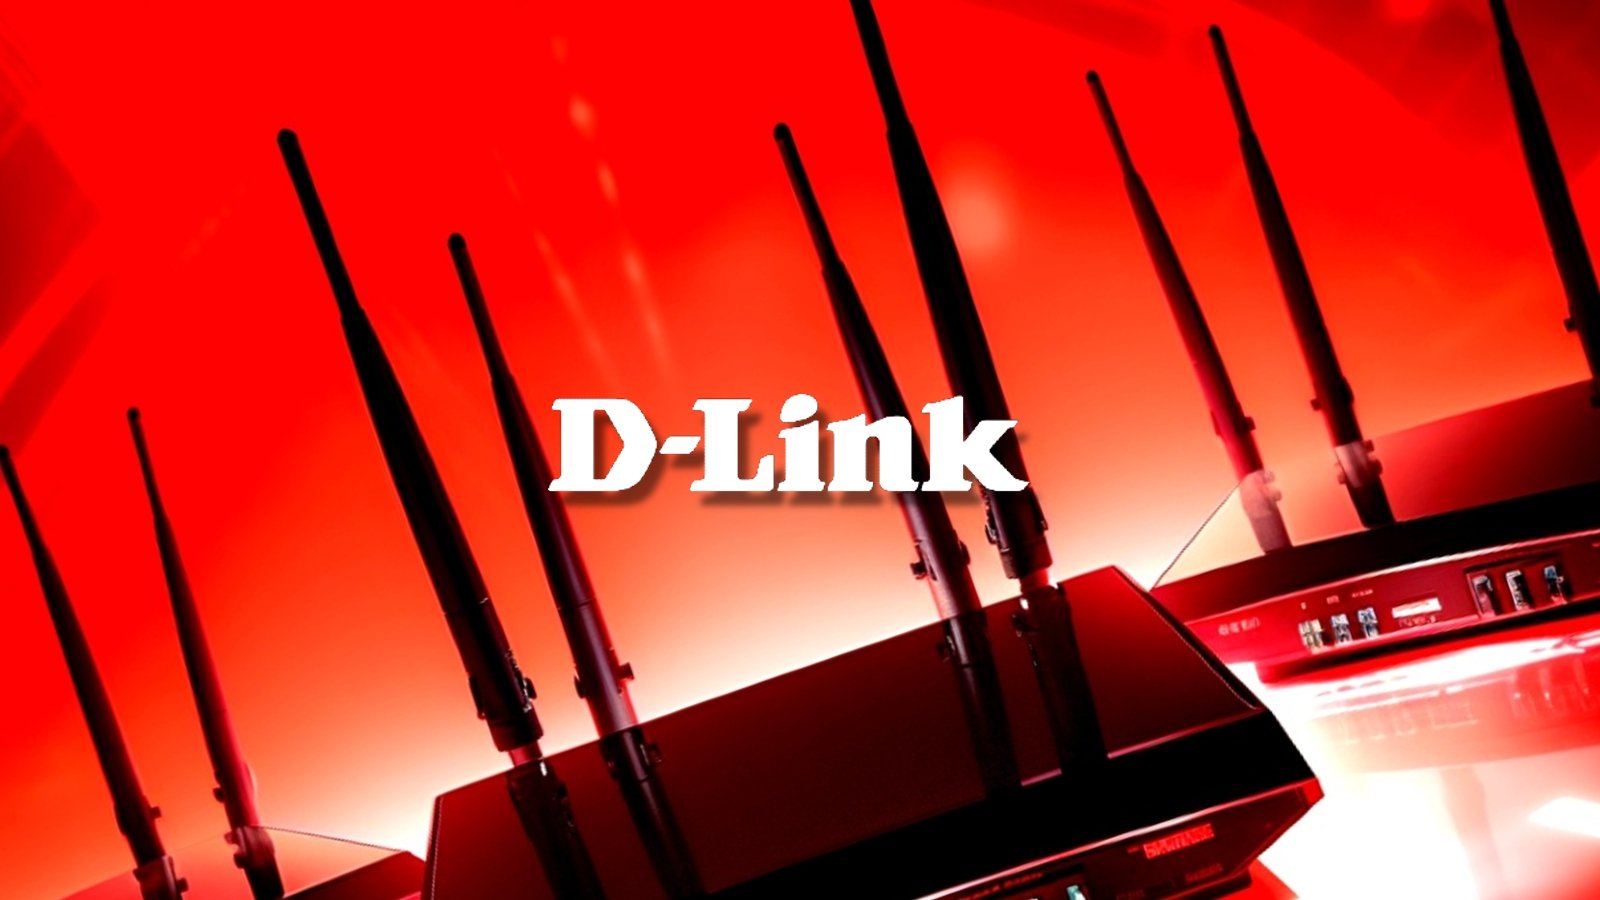 D-Link确认员工网络钓鱼攻击后数据泄露
